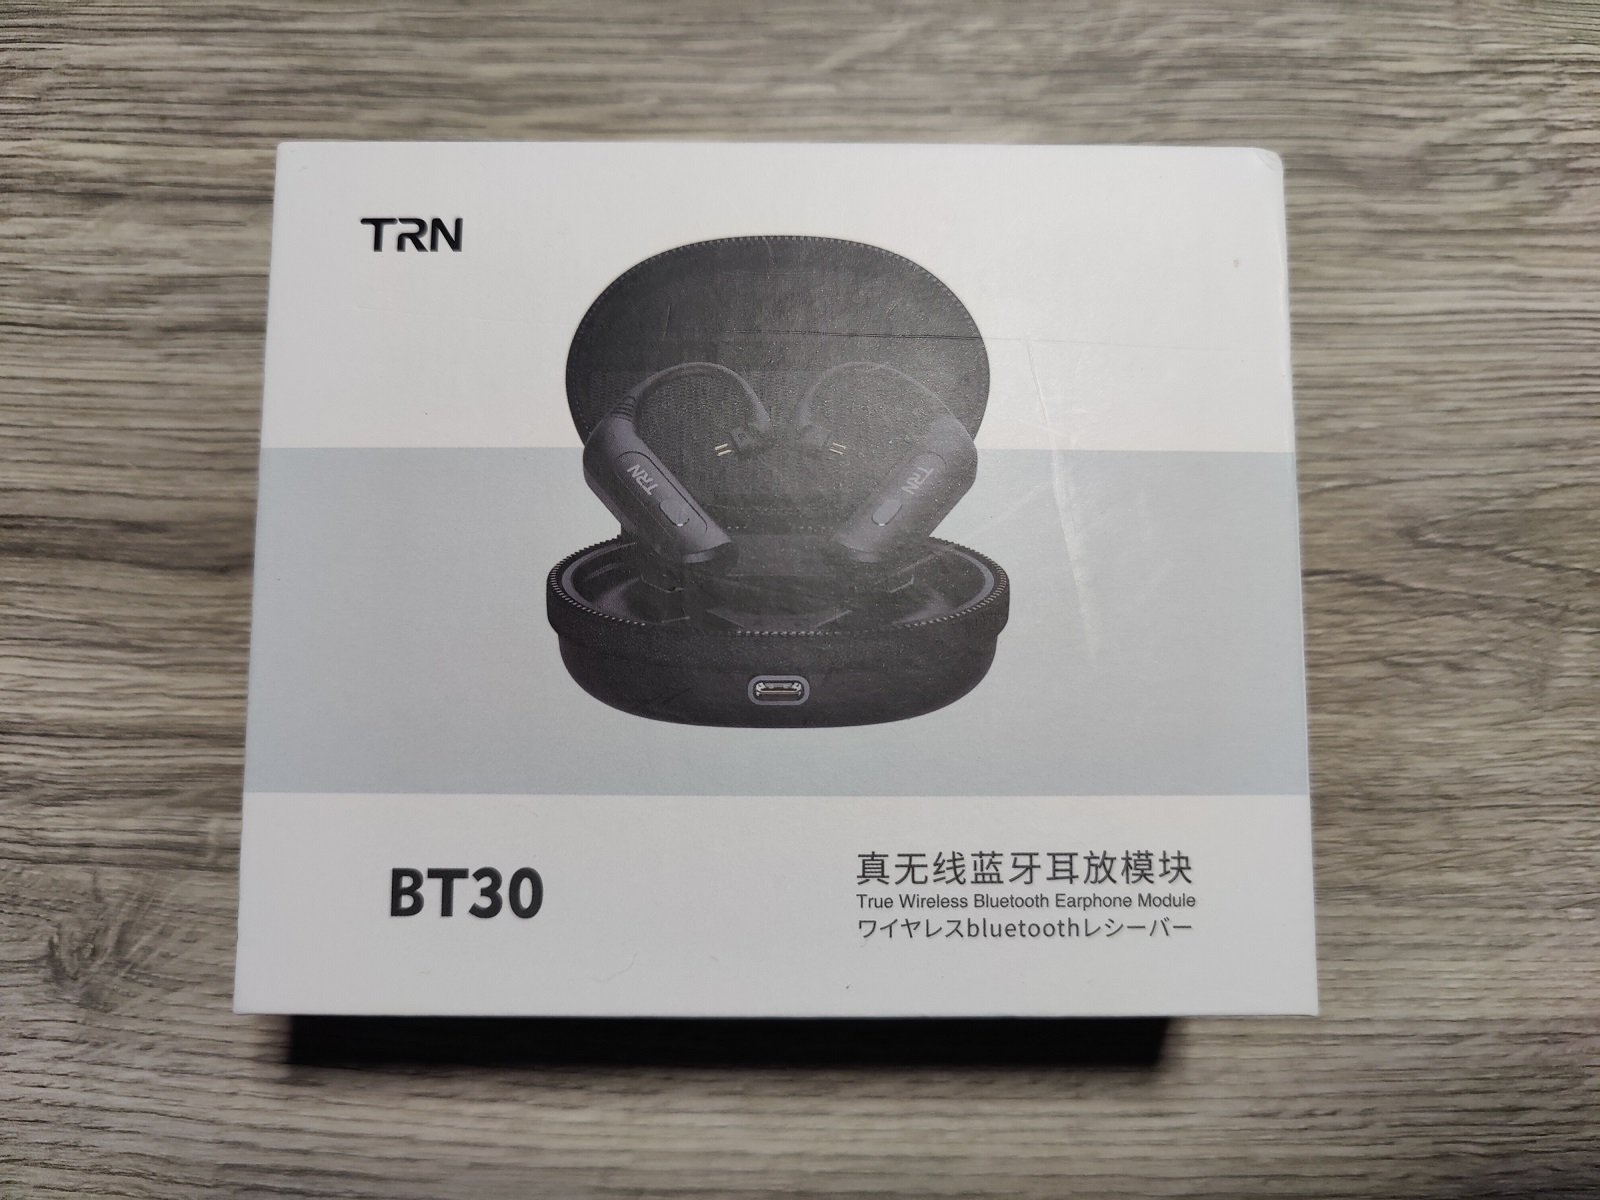 TRN BT30 Bluetooth Earphone Module Review